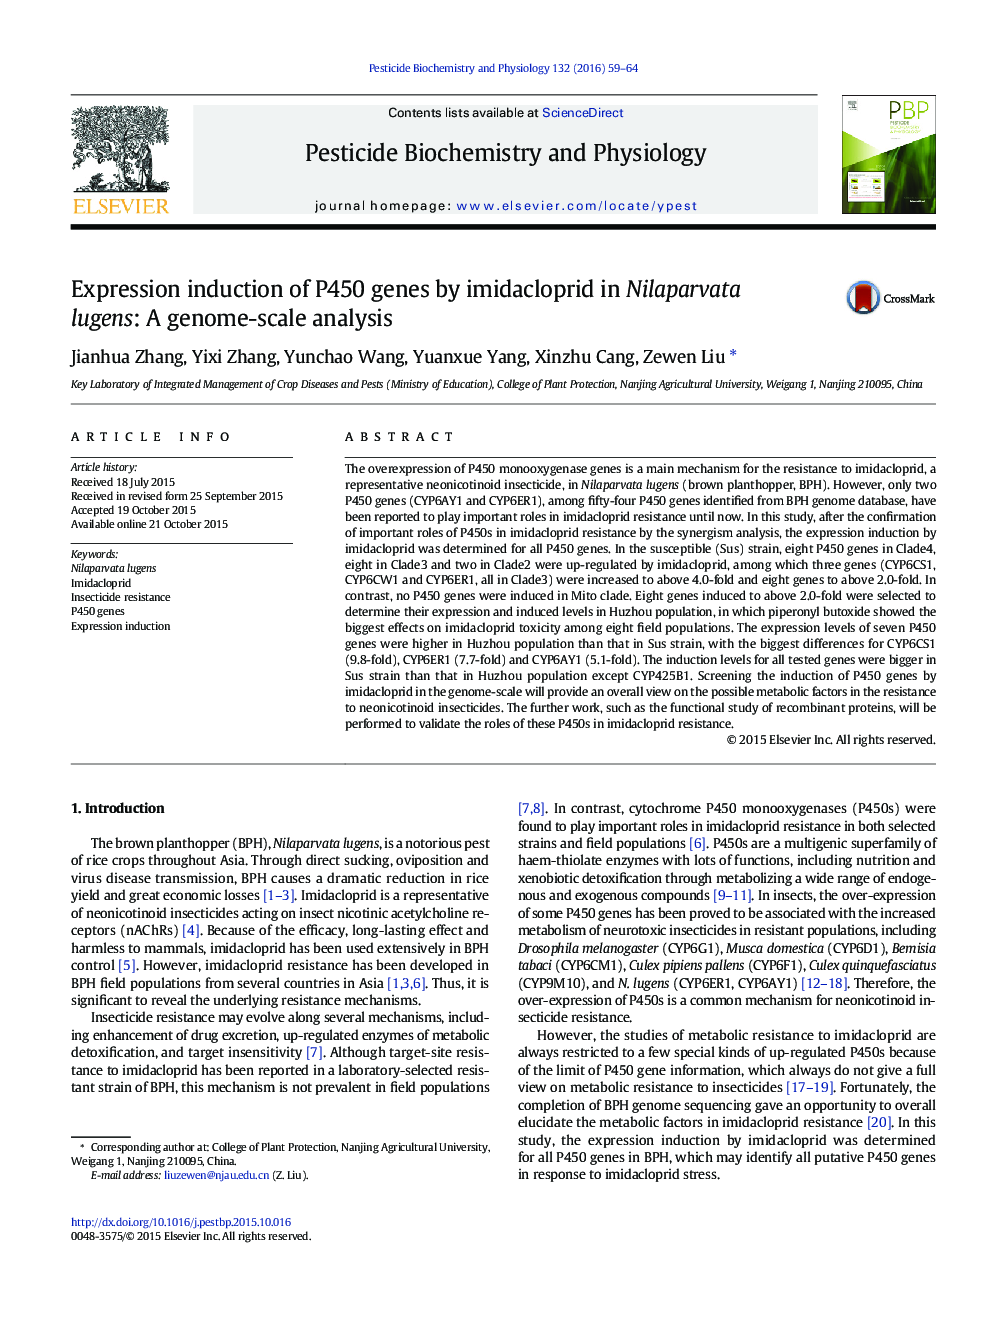 القای بیان ژن های P450 توسط ایمیداکلوپرید در lugens Nilaparvata: تجزیه و تحلیل در مقیاس ژنوم